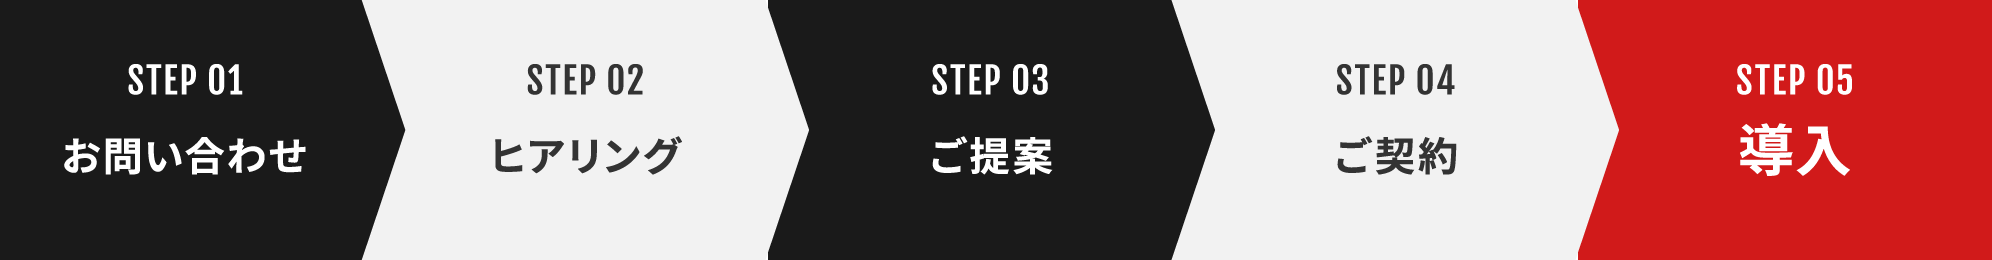 STEP 01お問い合わせ STEP 02 ヒアリング STEP 03 ご提案 STEP 04 ご契約 STEP 05 導入